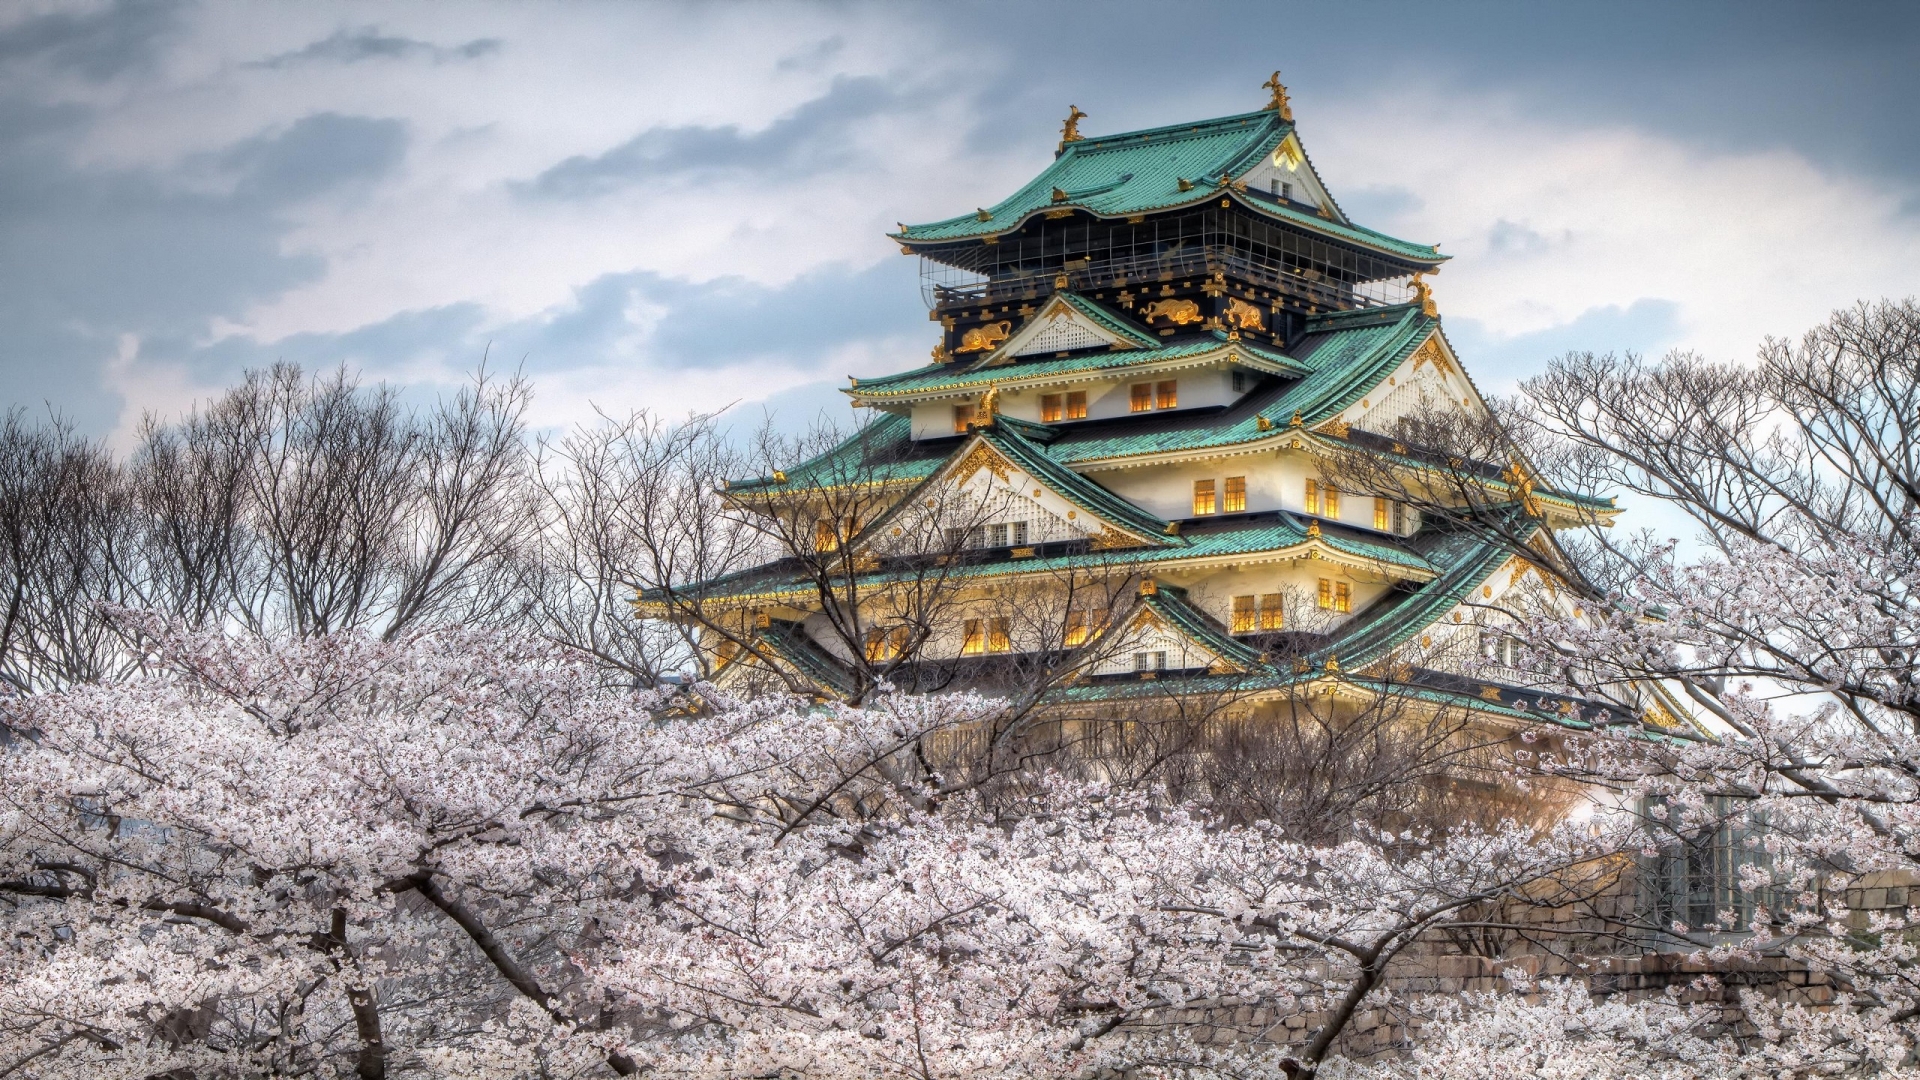 Osaka Castle Japan for 1920 x 1080 HDTV 1080p resolution